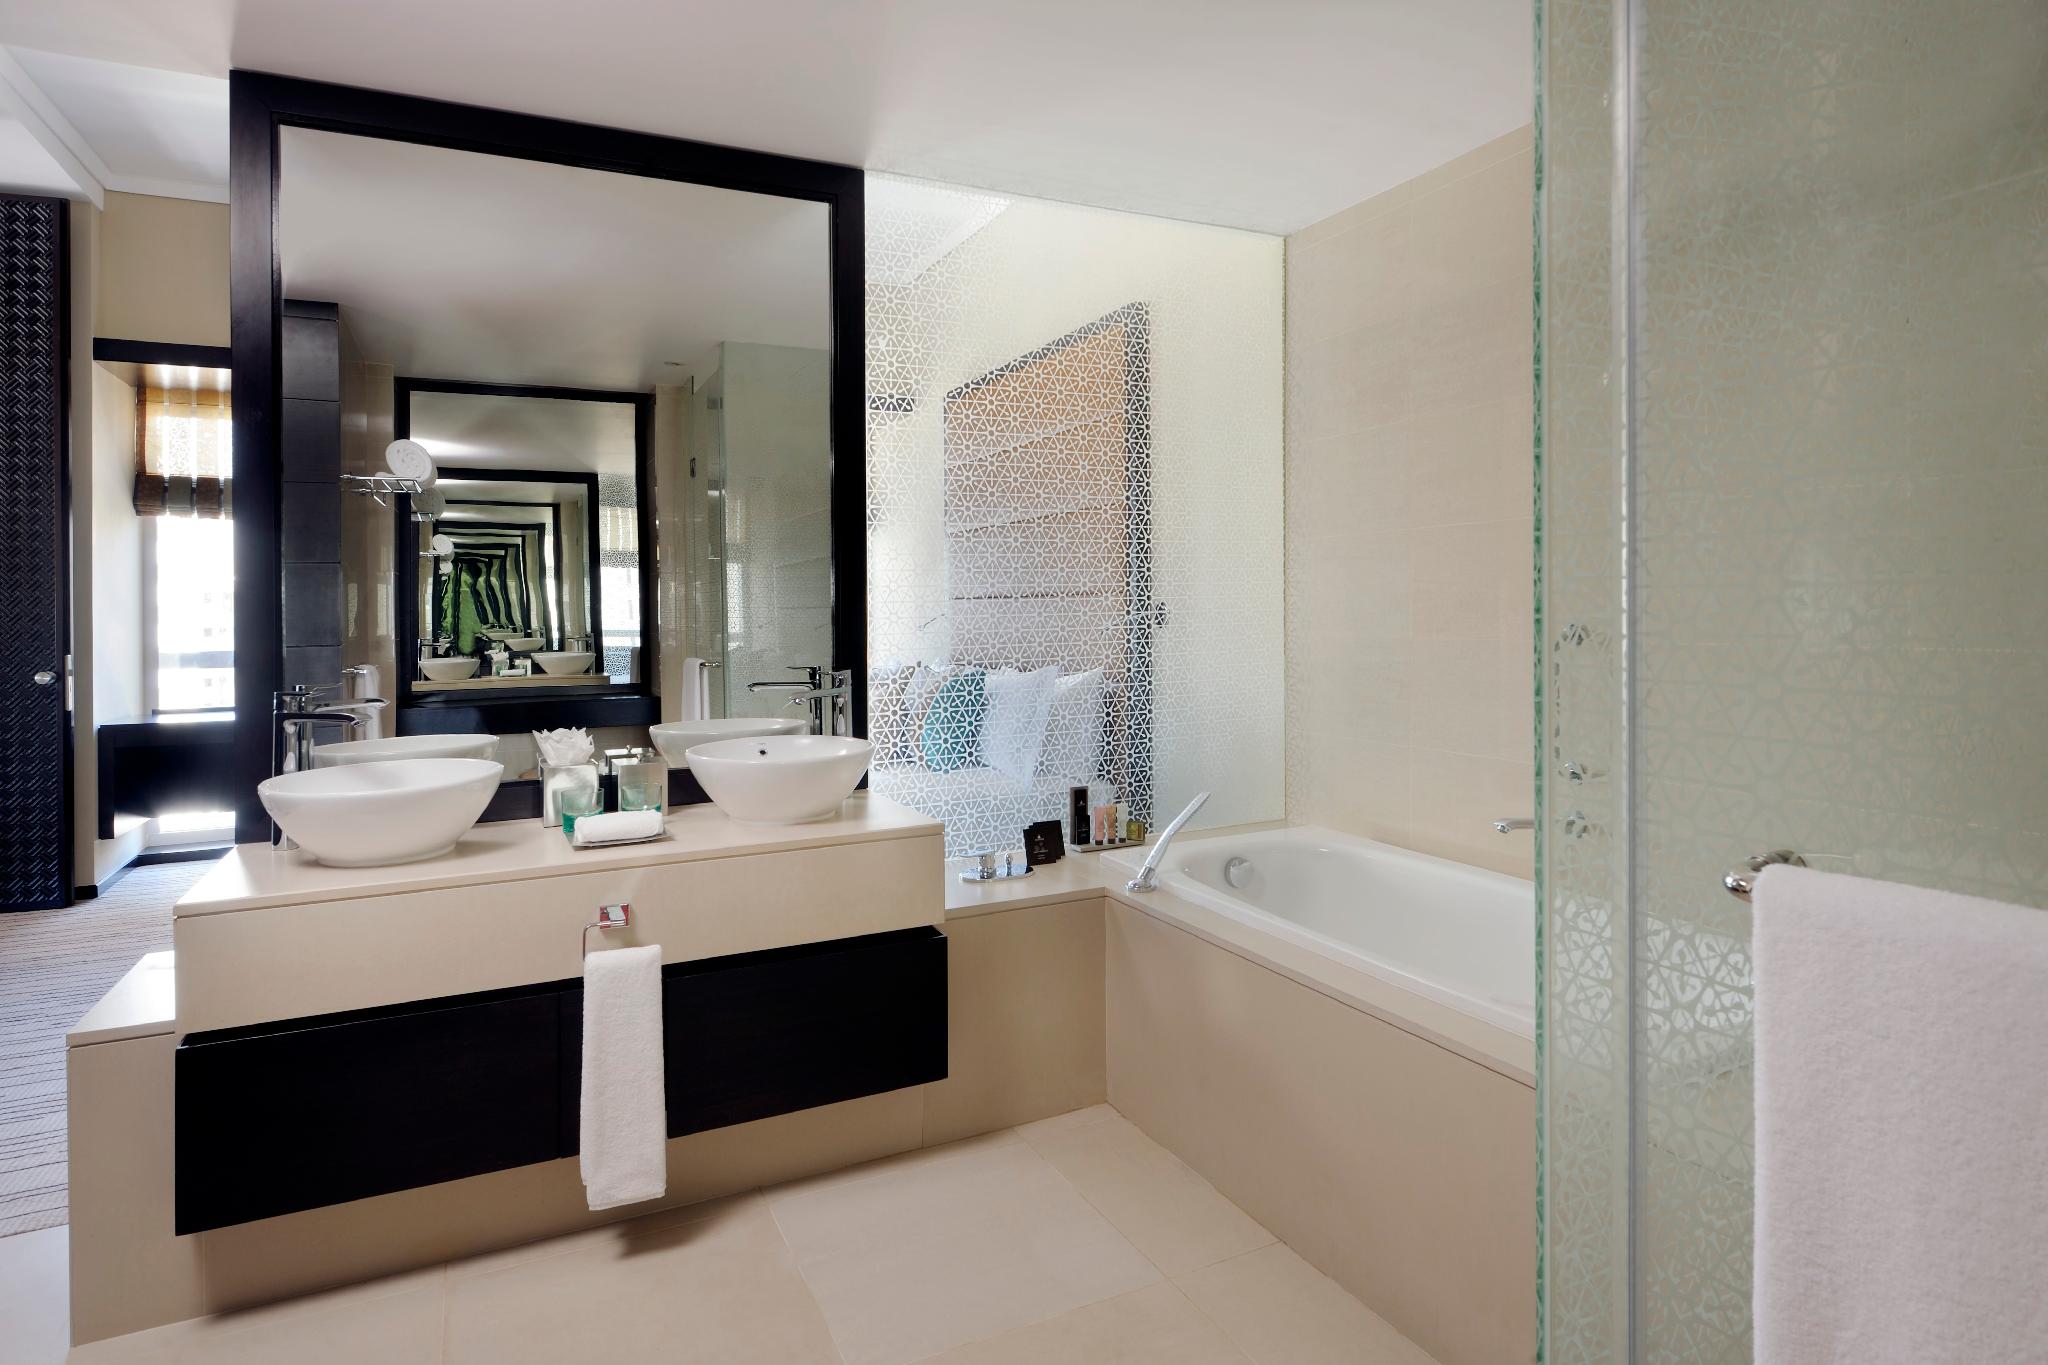 Phòng tắm chỉ vỏn vẹn 7m² cho người độc thân nhưng được chàng trai Sài Gòn đầu tư toàn thiết bị vệ sinh hiện đại, chi phí lắp đặt gần 40 triệu đồng - Ảnh 6.